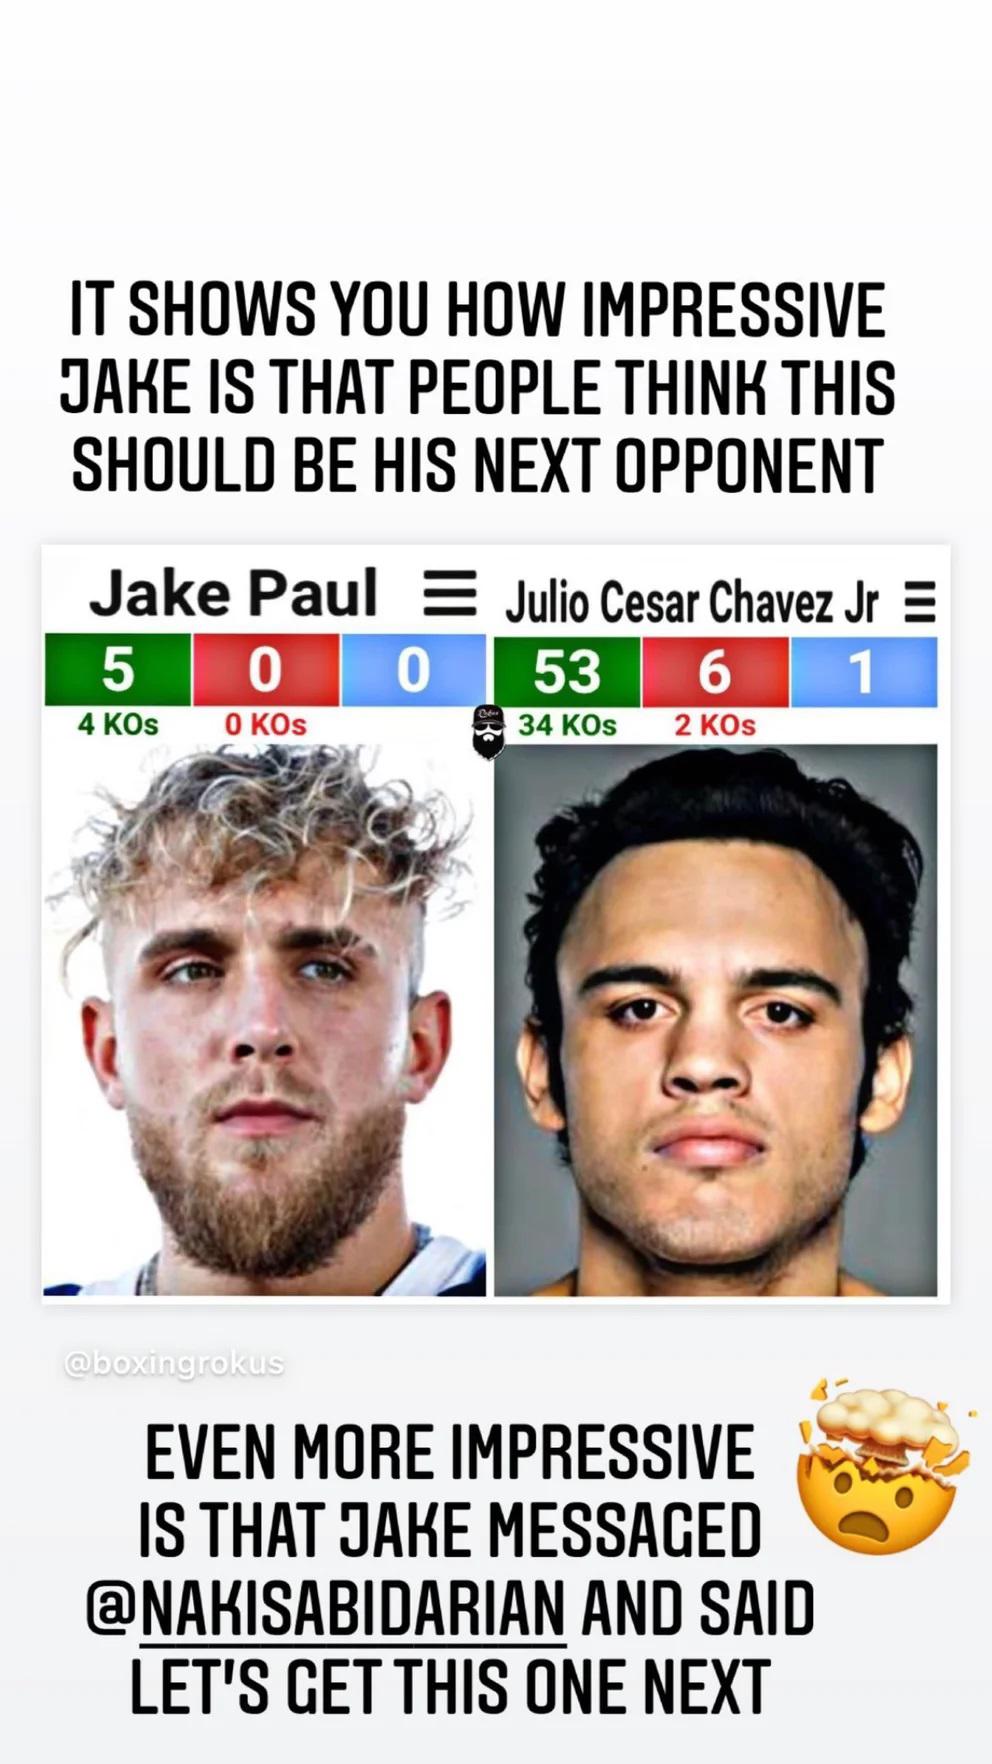 $!Jake Paul buscaría retar a Julio César Chávez Jr. en 2022